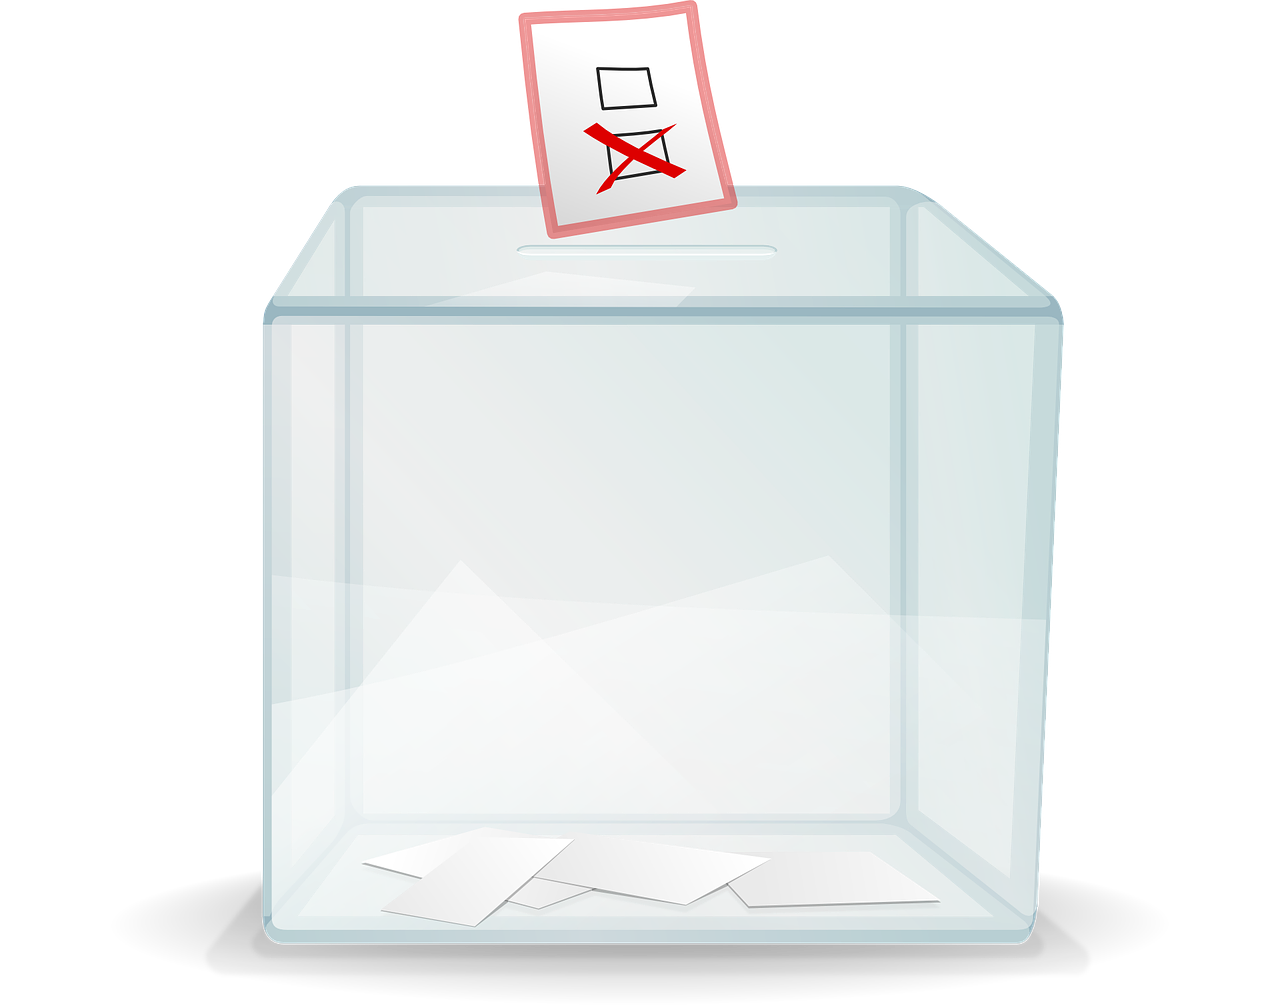 Elective ballot